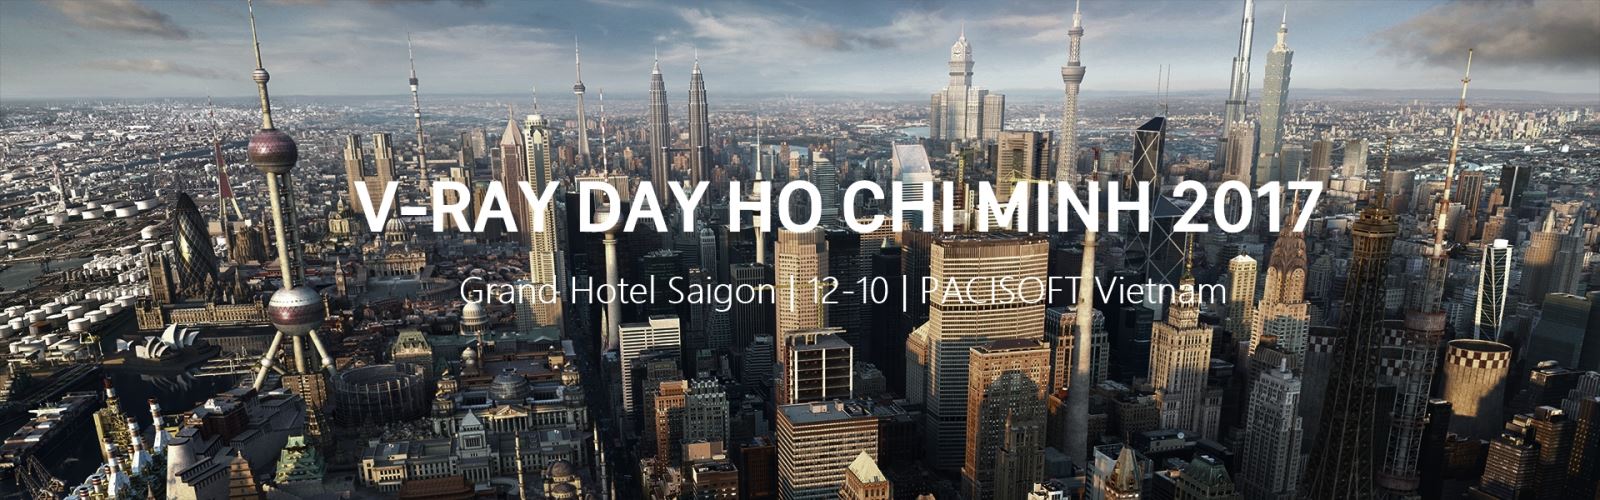 Thumbnail V-Ray Day Ho Chi Minh 2017